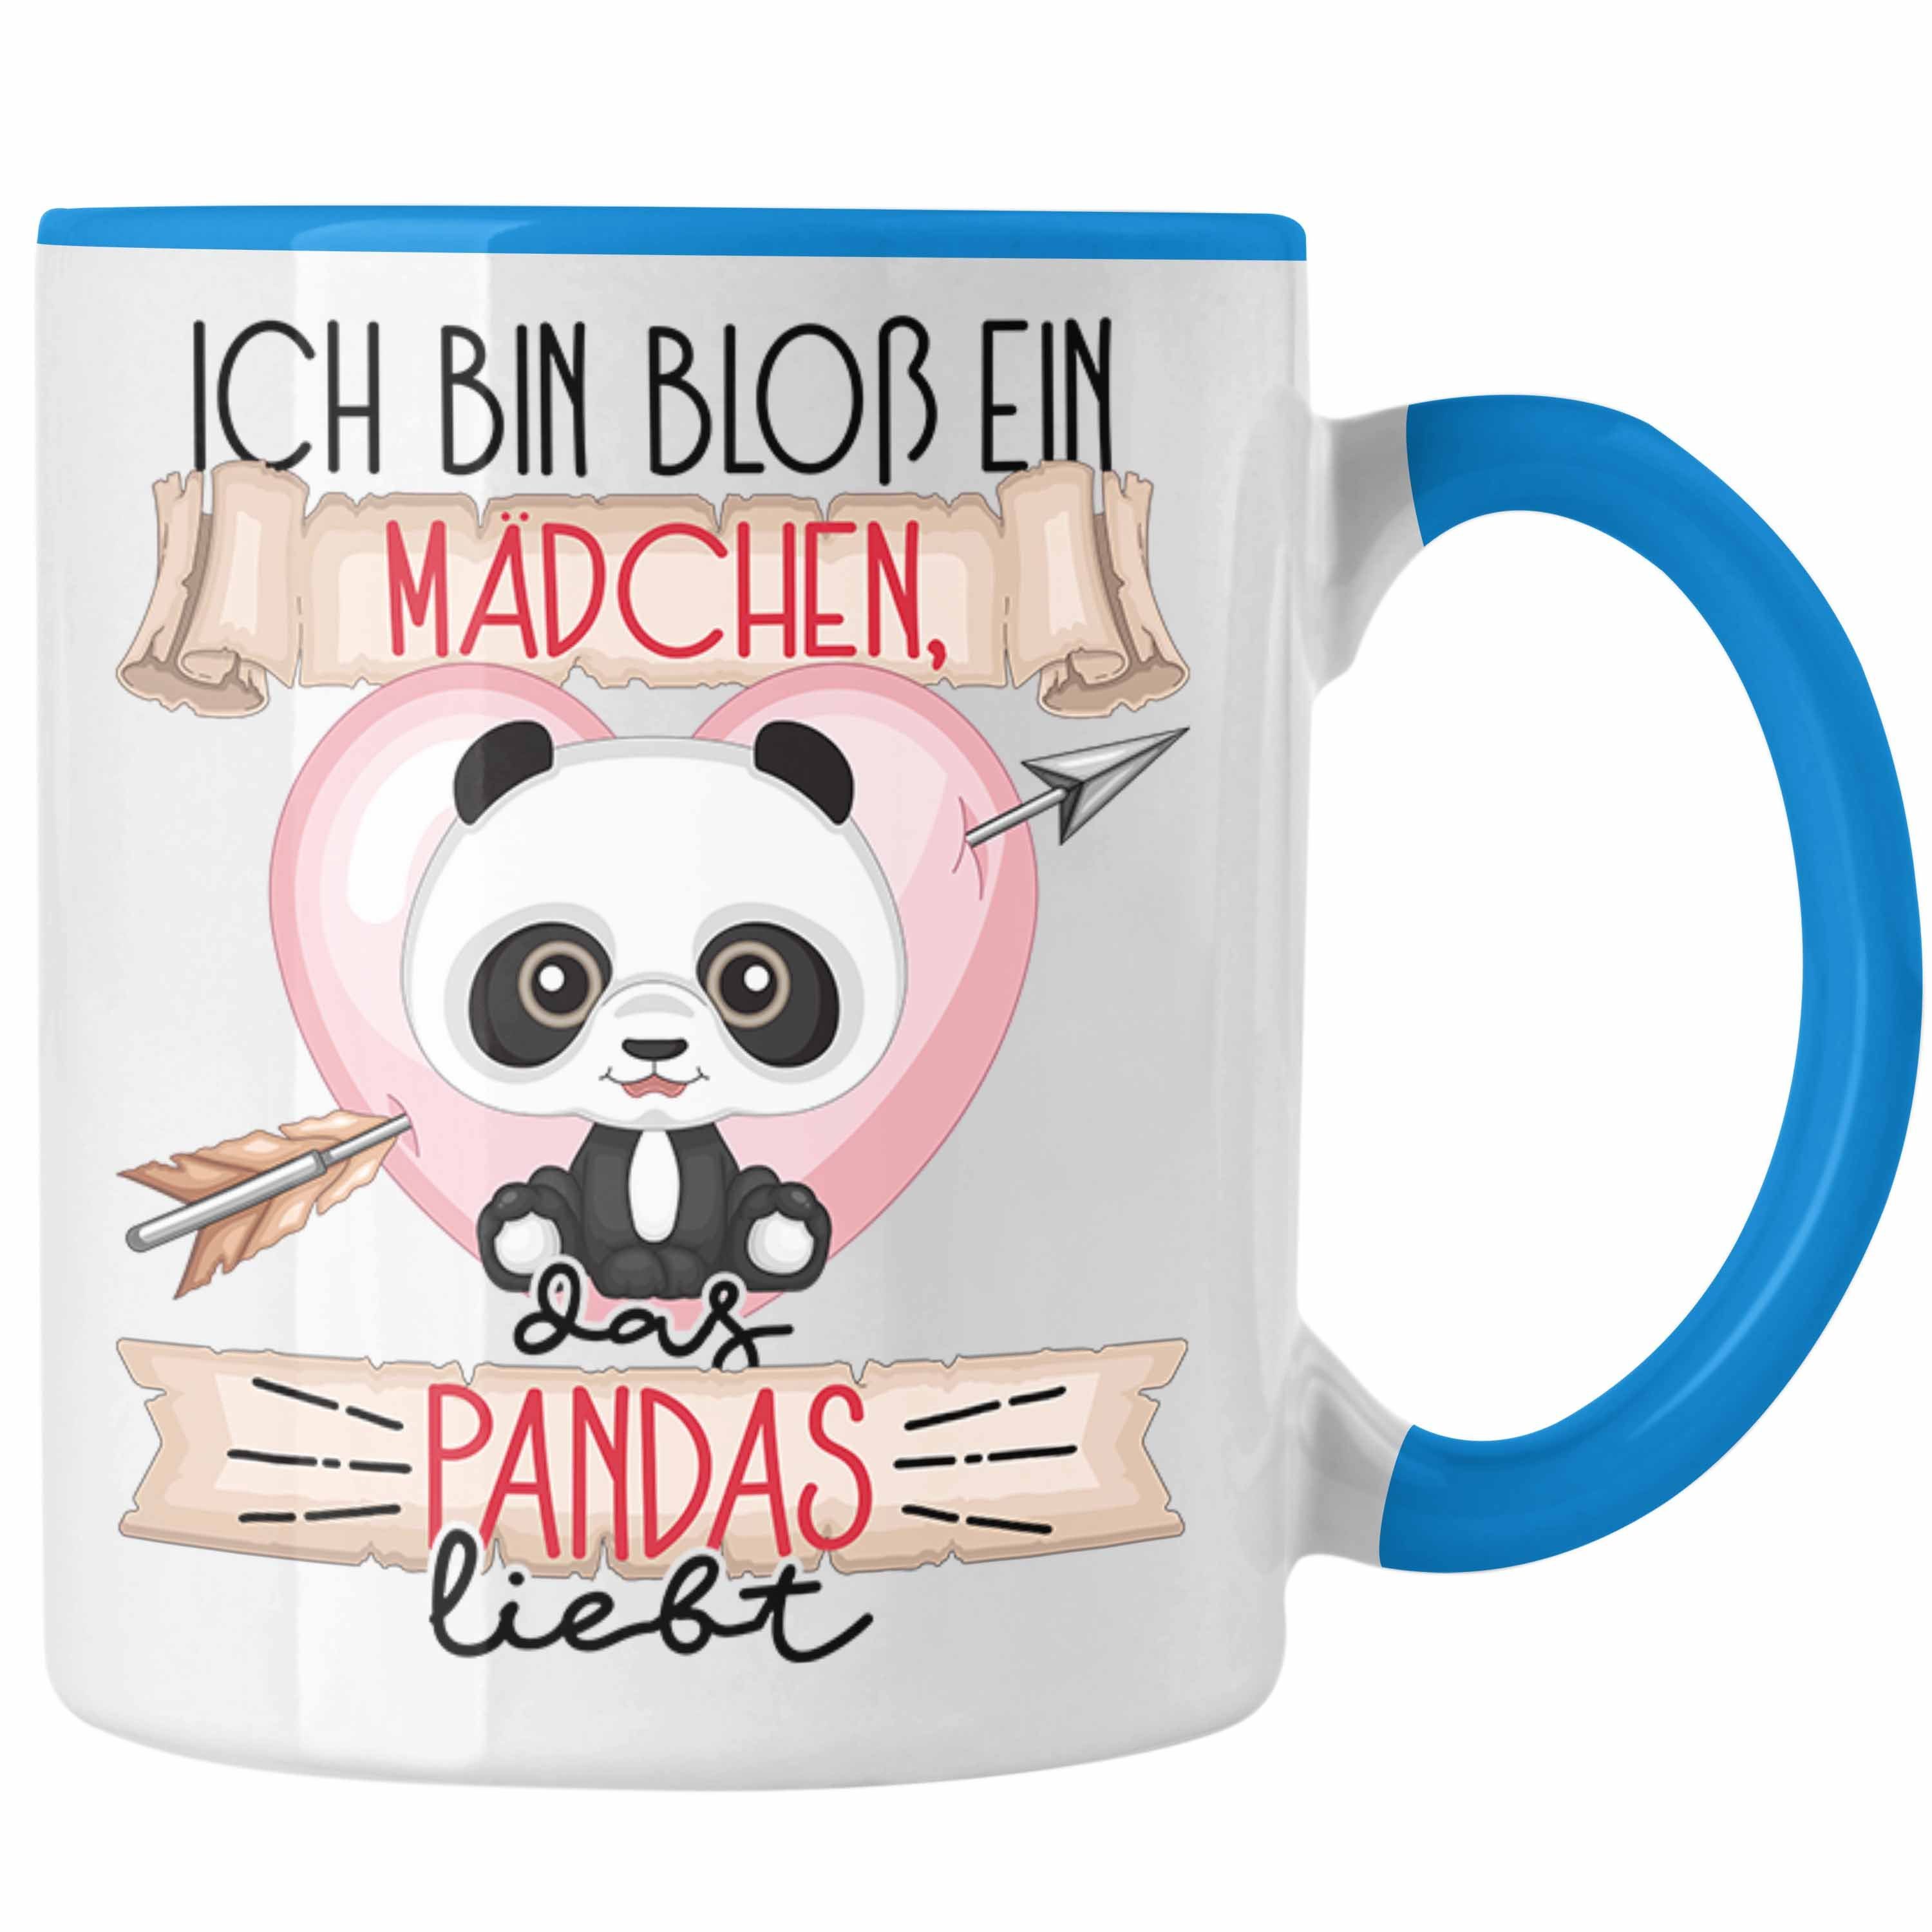 Trendation Liebt Bloß Das Mädchen Tasse Pandas Pandas Geschenk Blau Ein Ich Frauen Tasse Bin